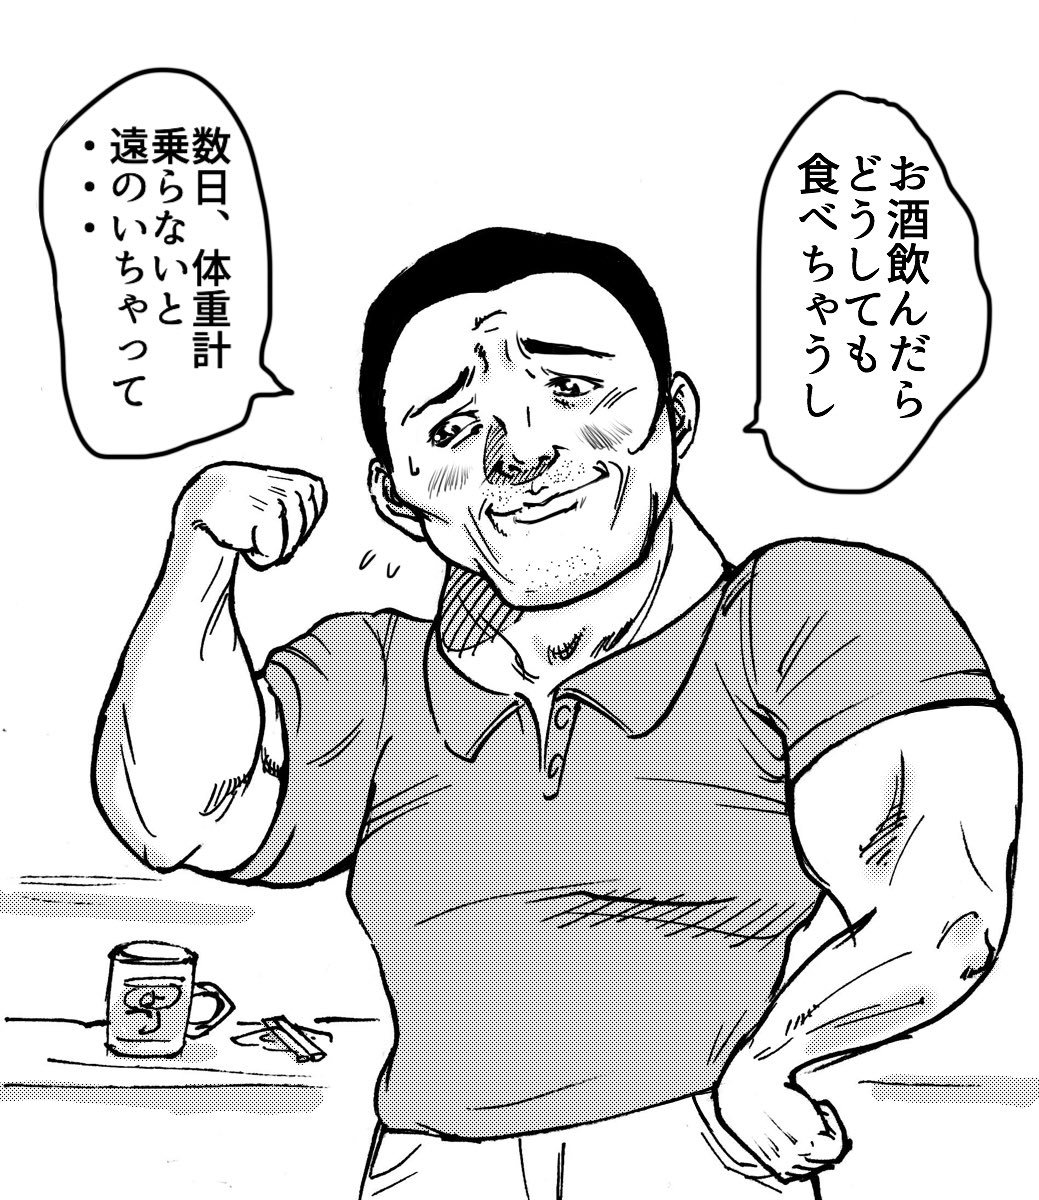 立ち飲み屋で会った筋肉ムキムキのおじさんに
「いい体してますね！
大きい！」
と言ったら返答が
少し可愛かった。

#無SHOCK 